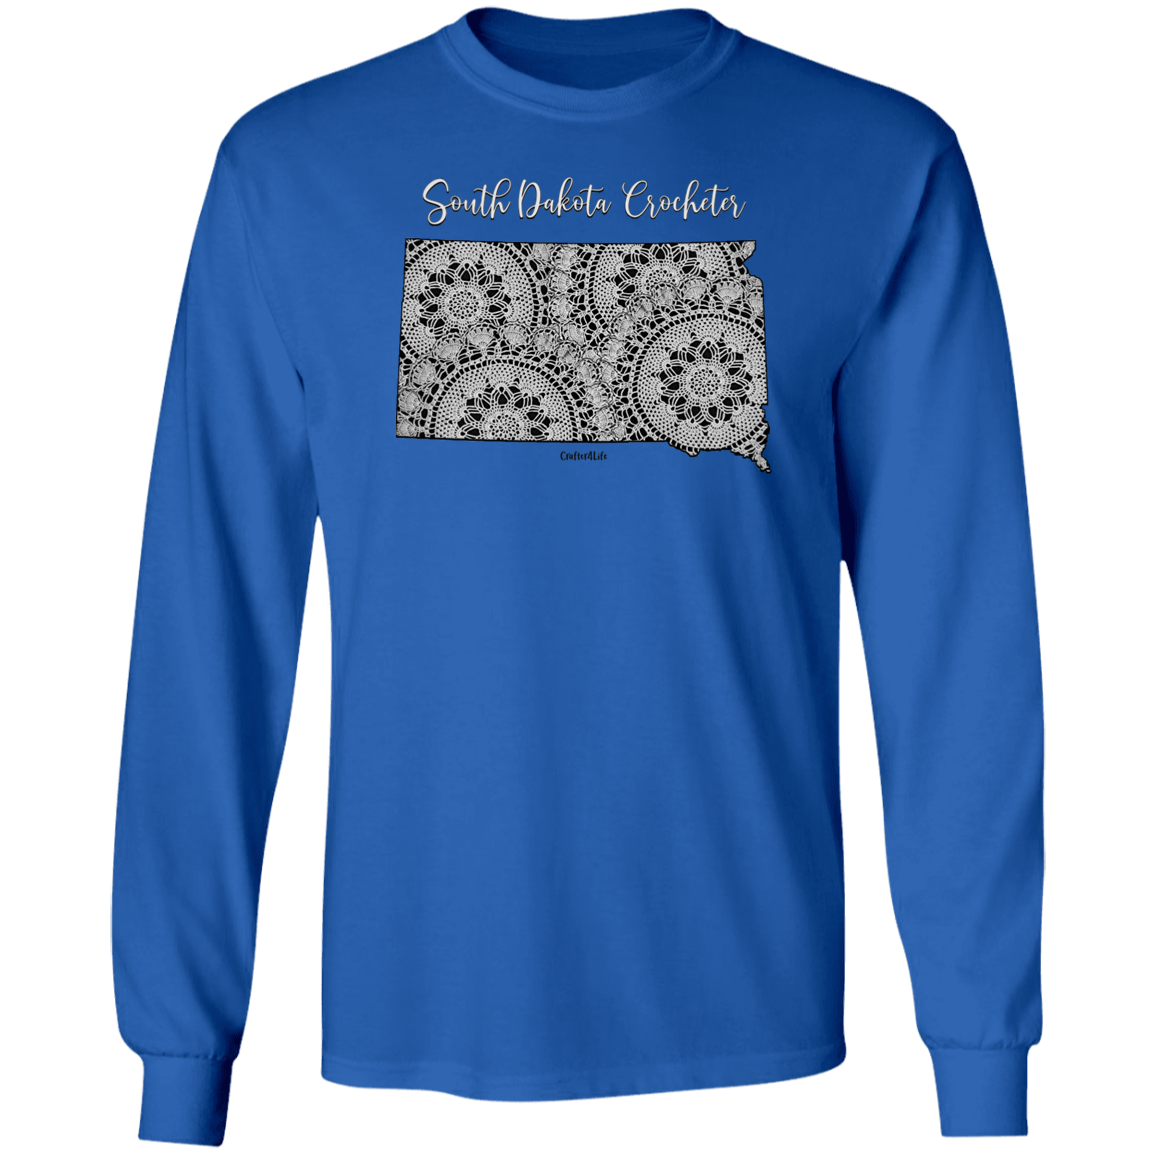 South Dakota Crocheter LS Ultra Cotton T-Shirt